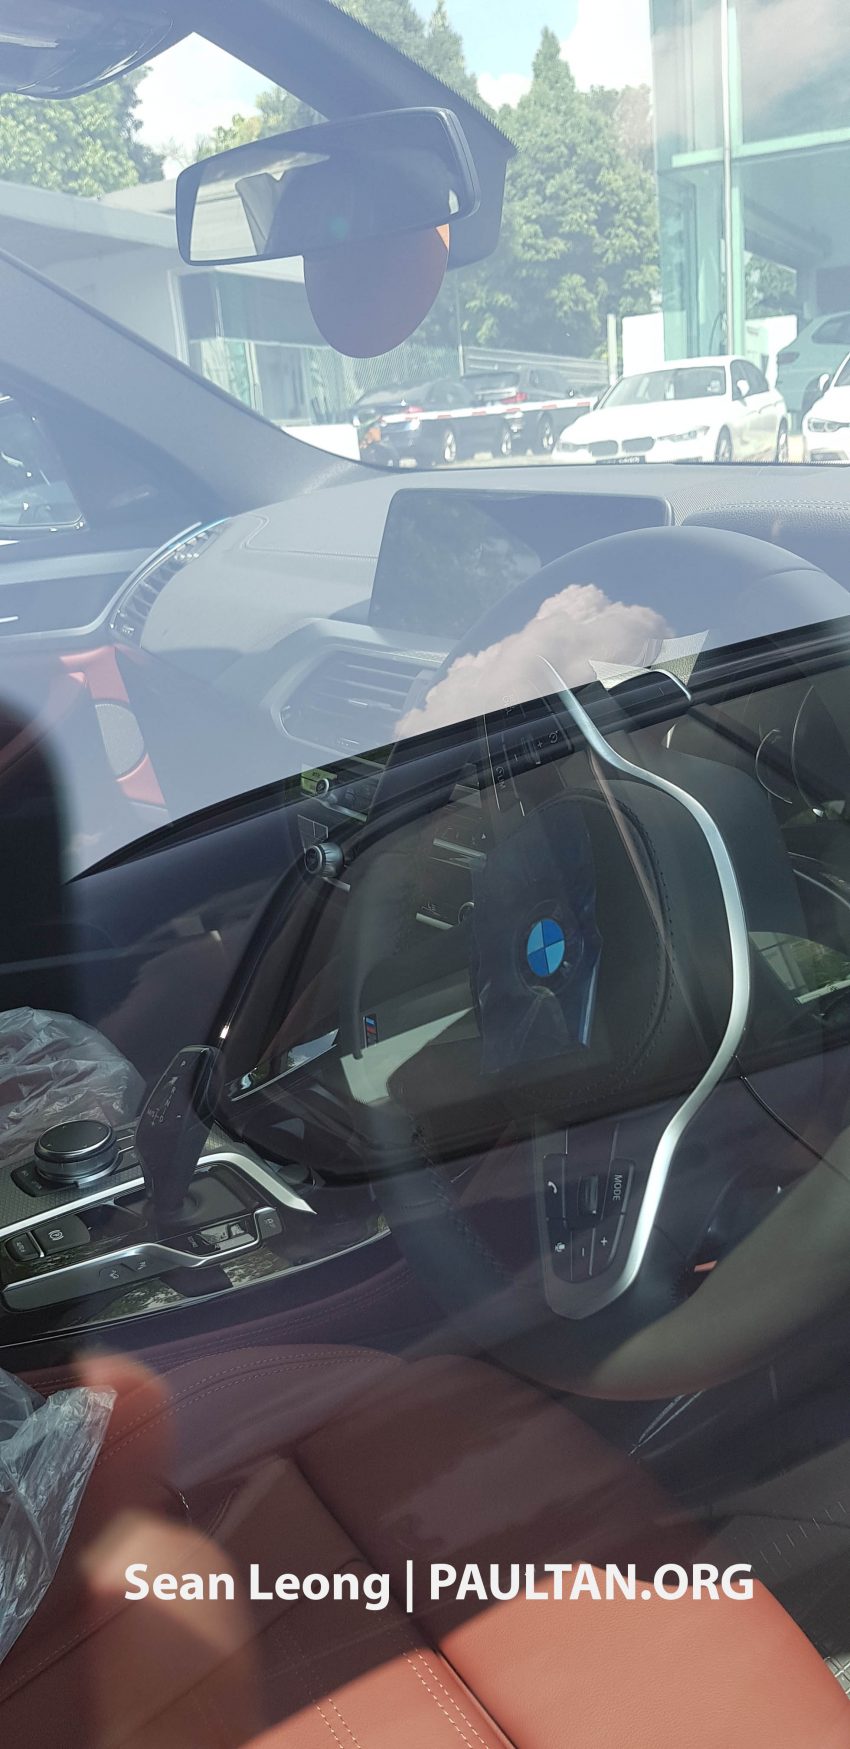 全新 BMW X5 与 X4 无伪装现身陈列室, 暗示本地发布在即 95859